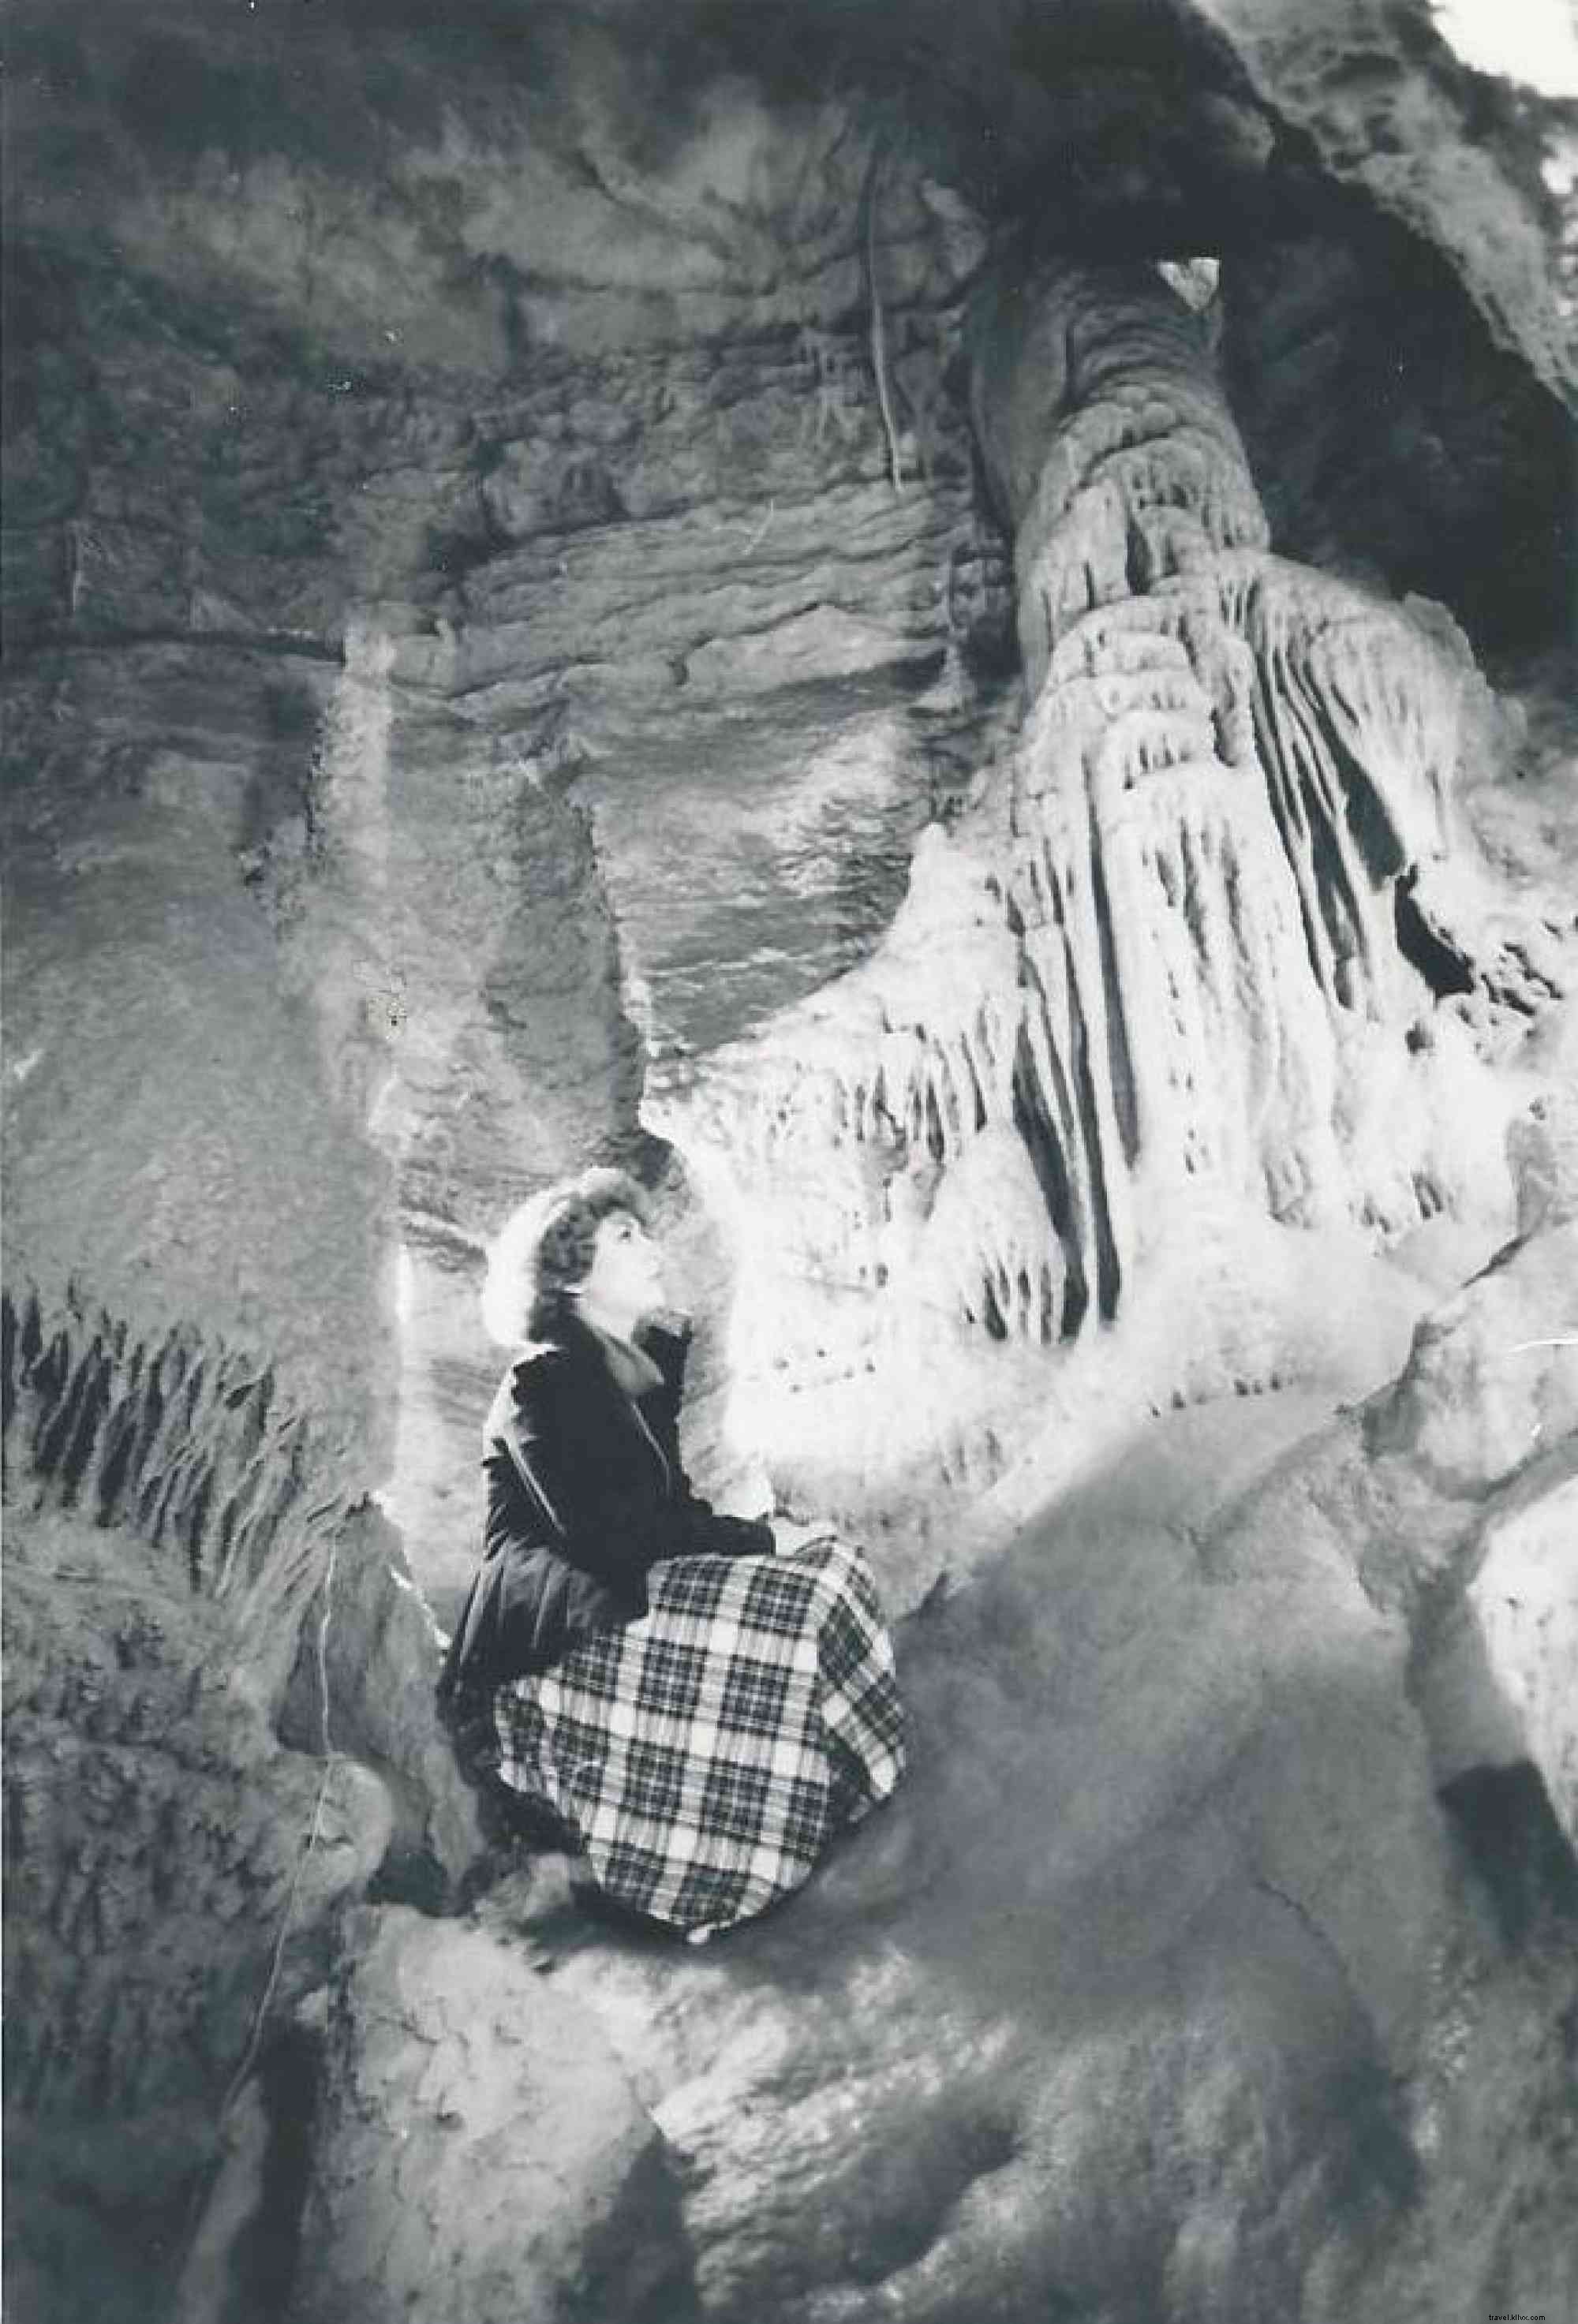 incoln Caverns celebra 90 años de descubrimiento 